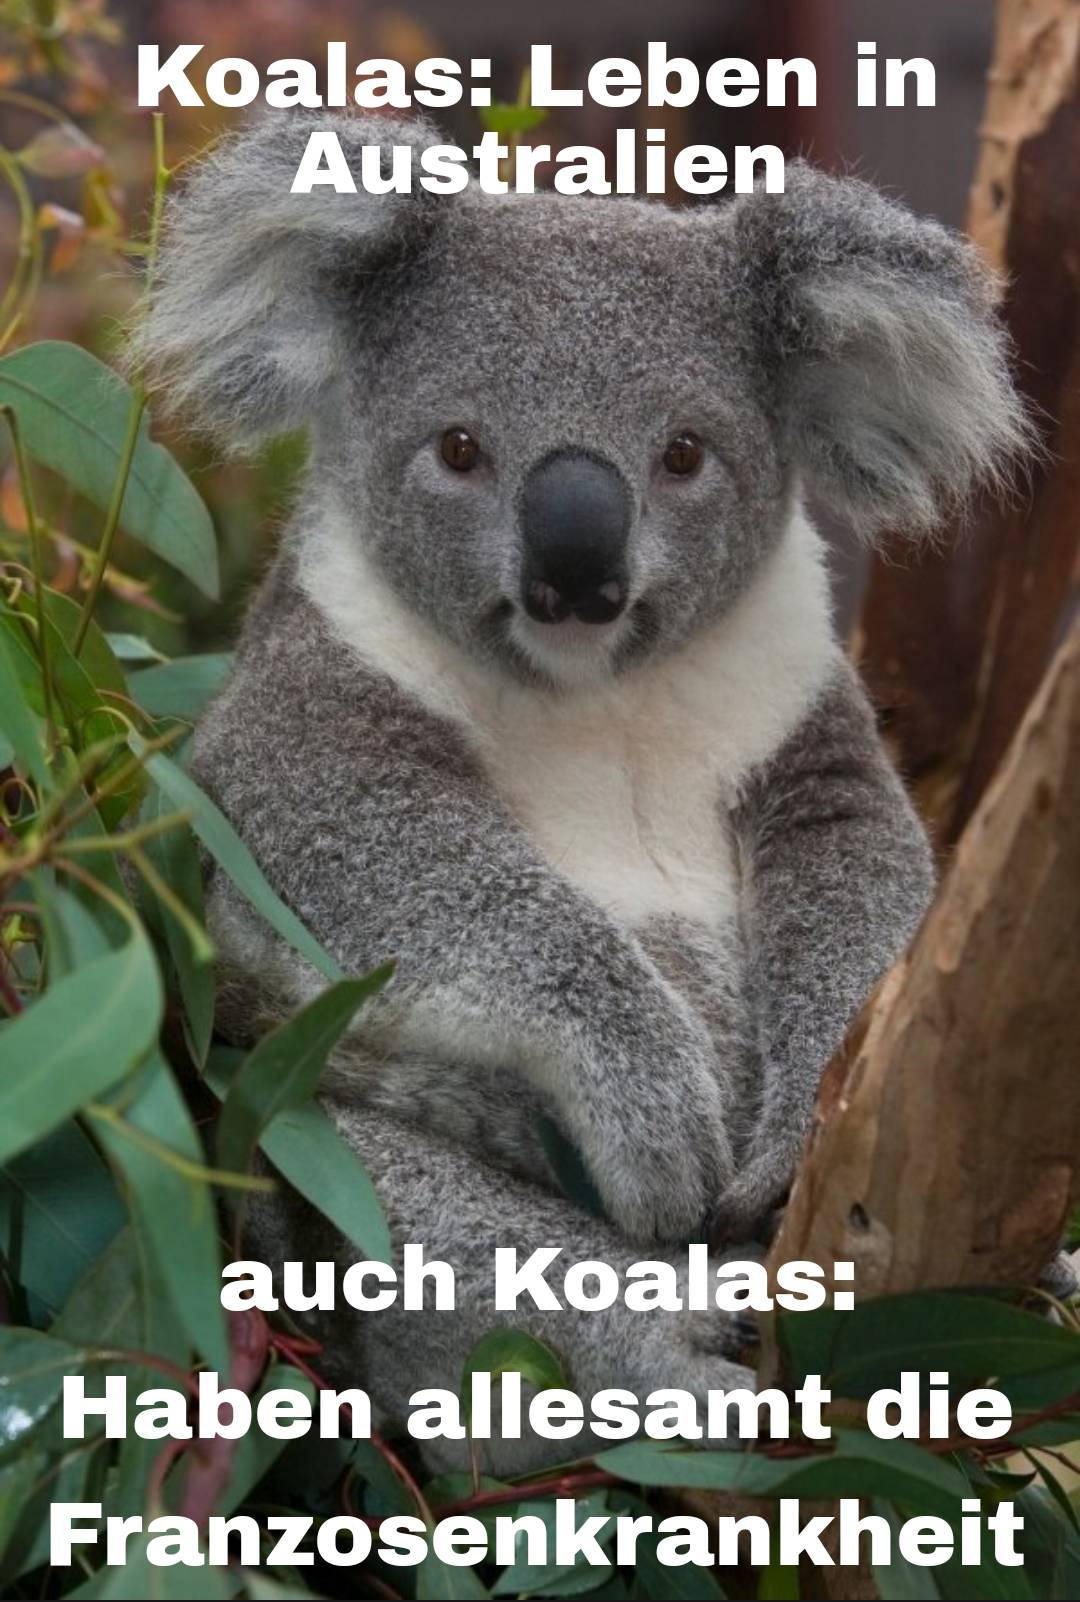 die meisten Koalas haben Syphilis